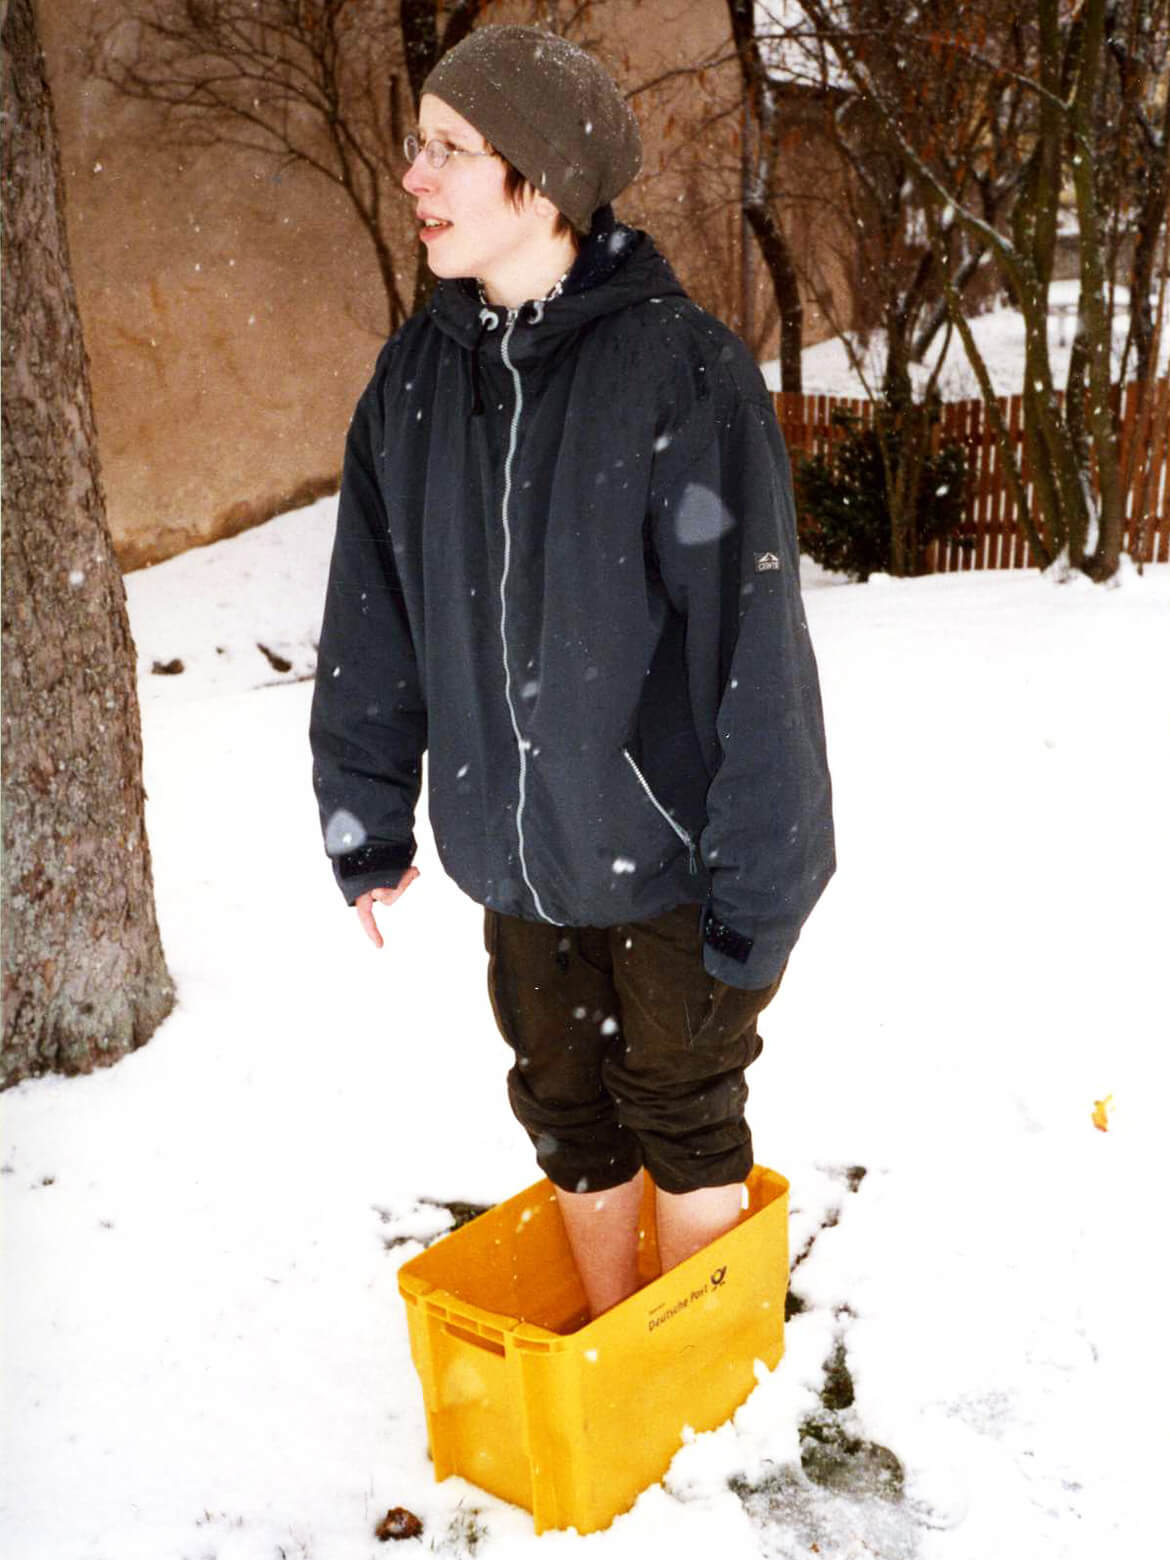 Stefanie steht barfus in einer gelben DHL-Post-Box, die warmes Wasser enthält, um sie herum liegt Schnee